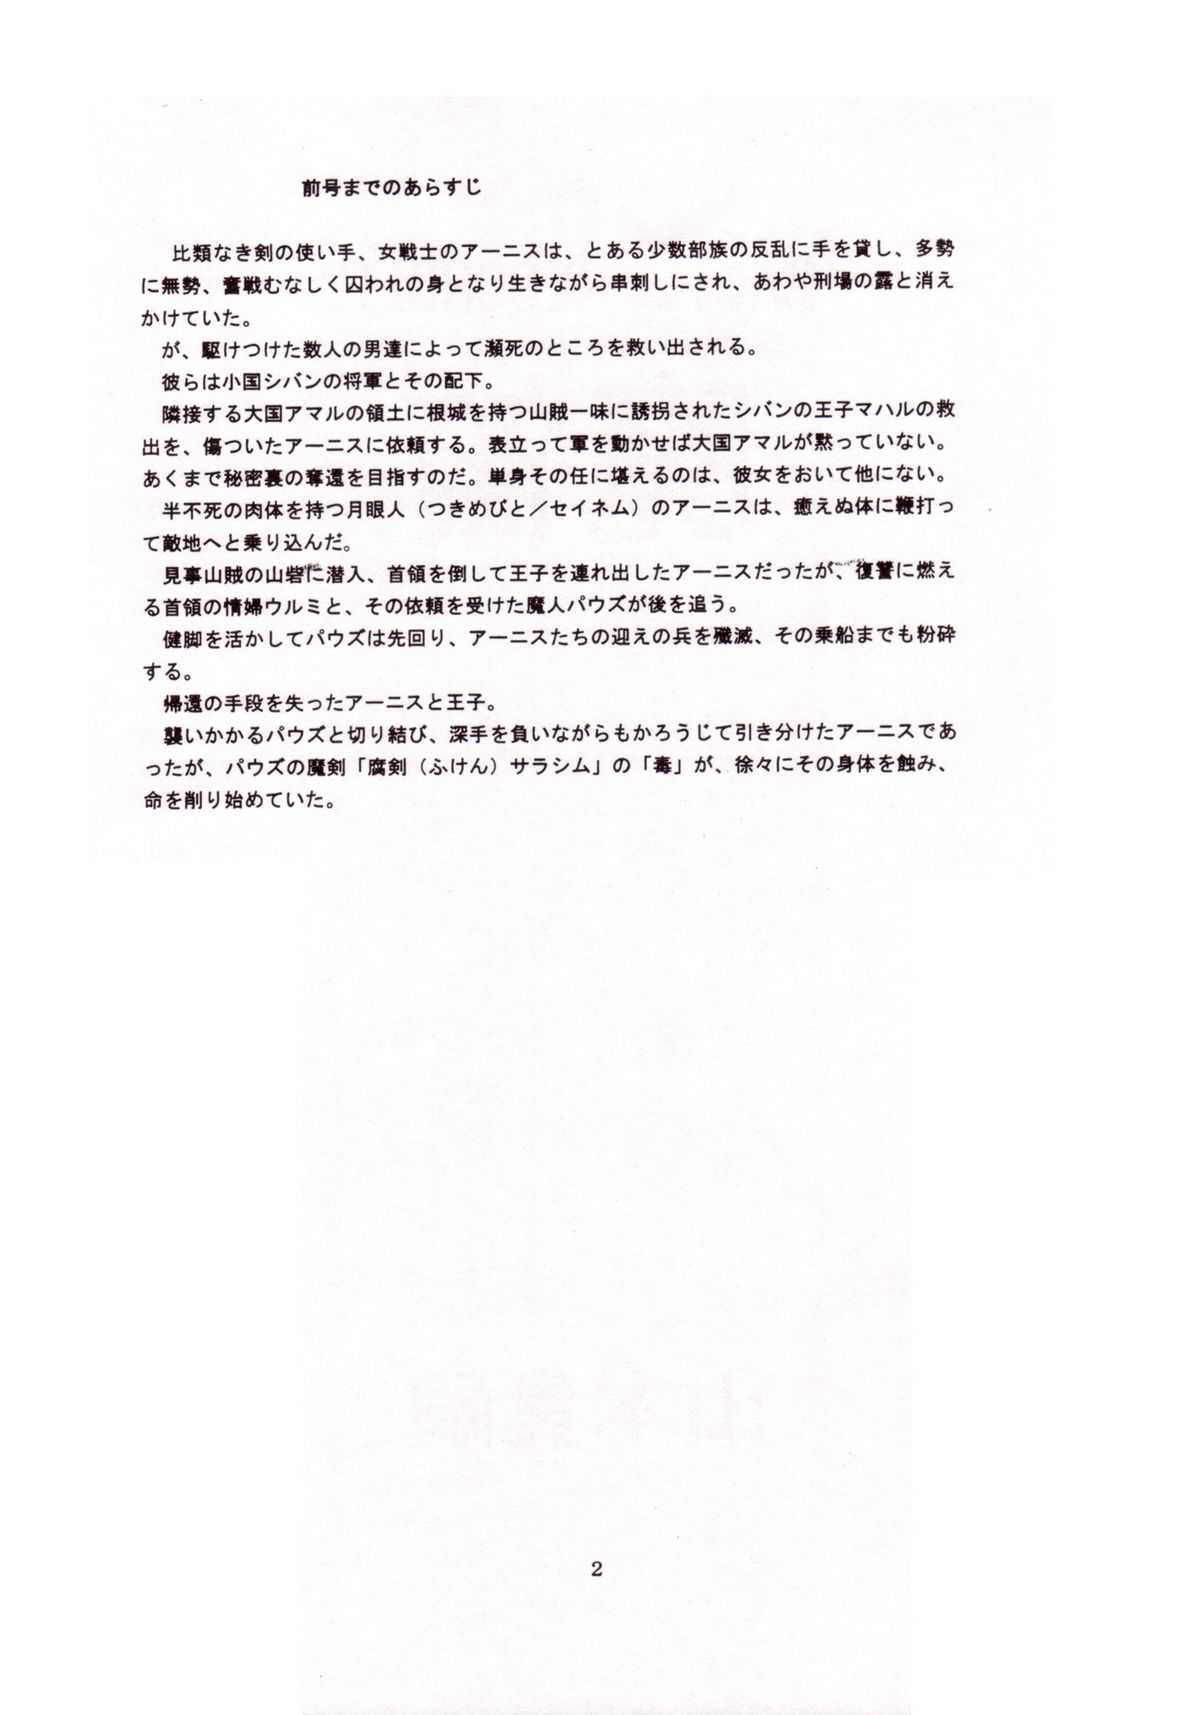 [Yamamoto Atsuji] Magic Recorder (English) 